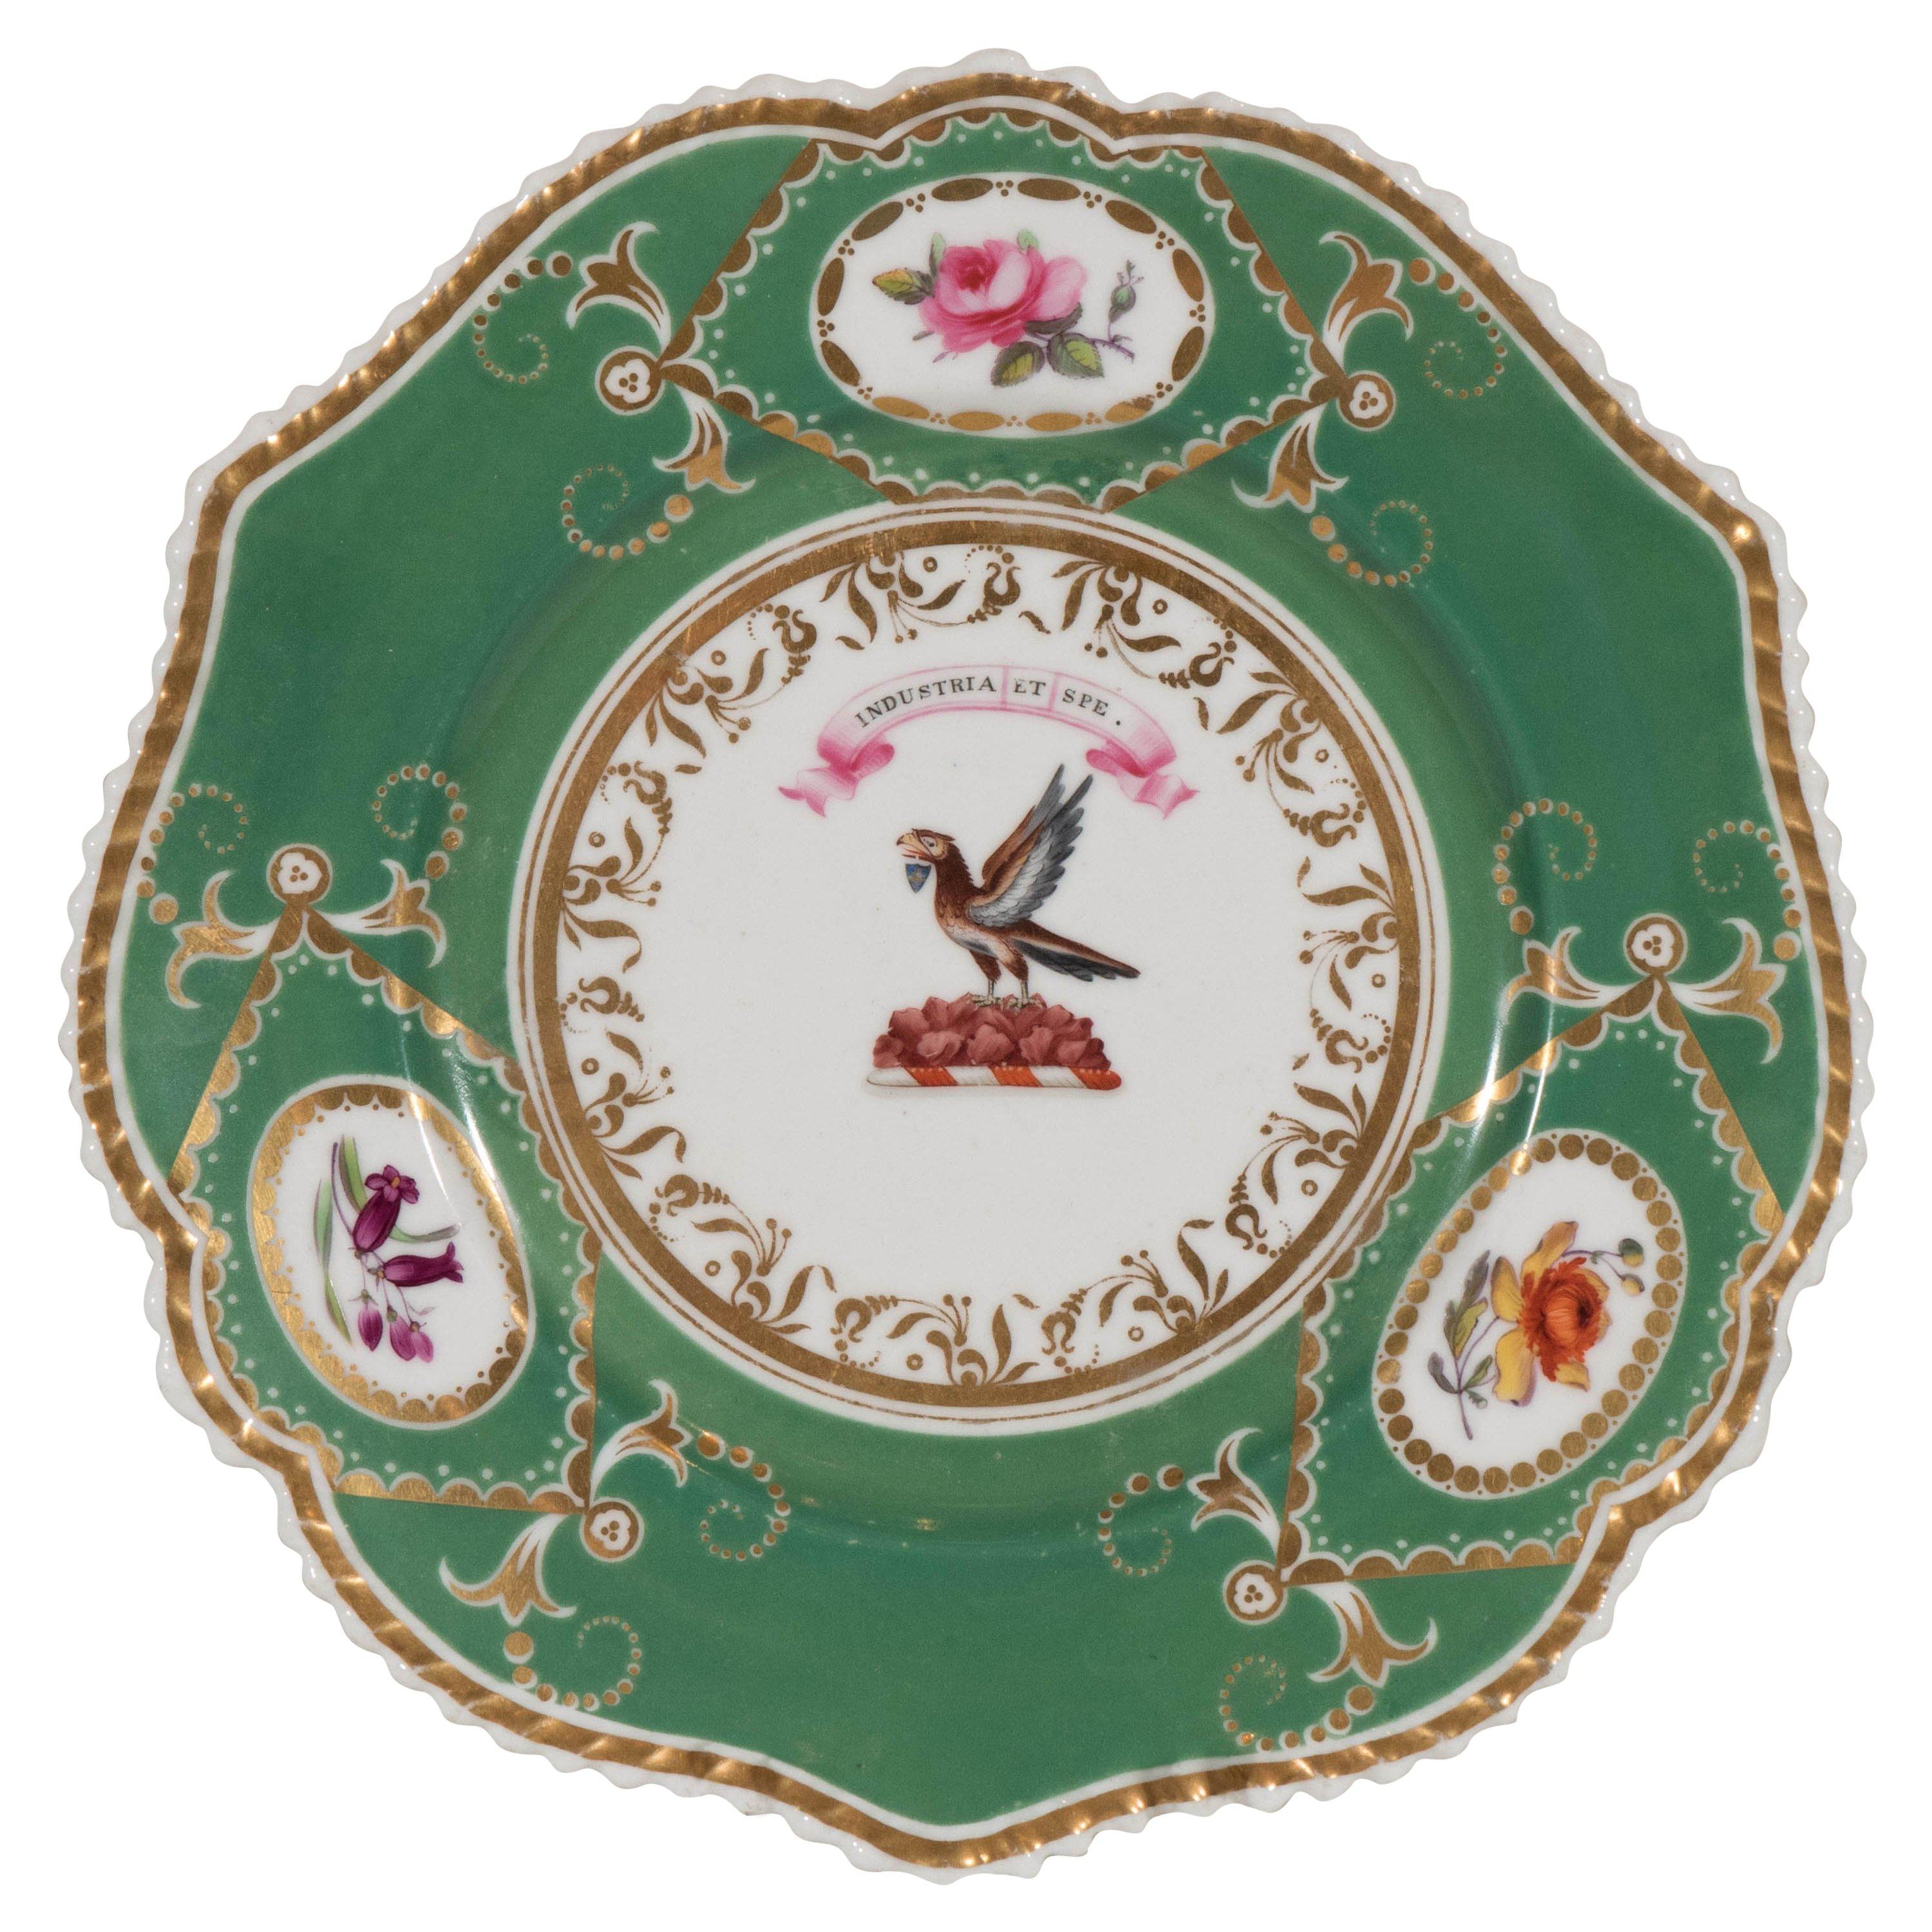  Englischer Porzellan-Wappenteller mit Adlermotiv, handbemalt, von Industry and Hope